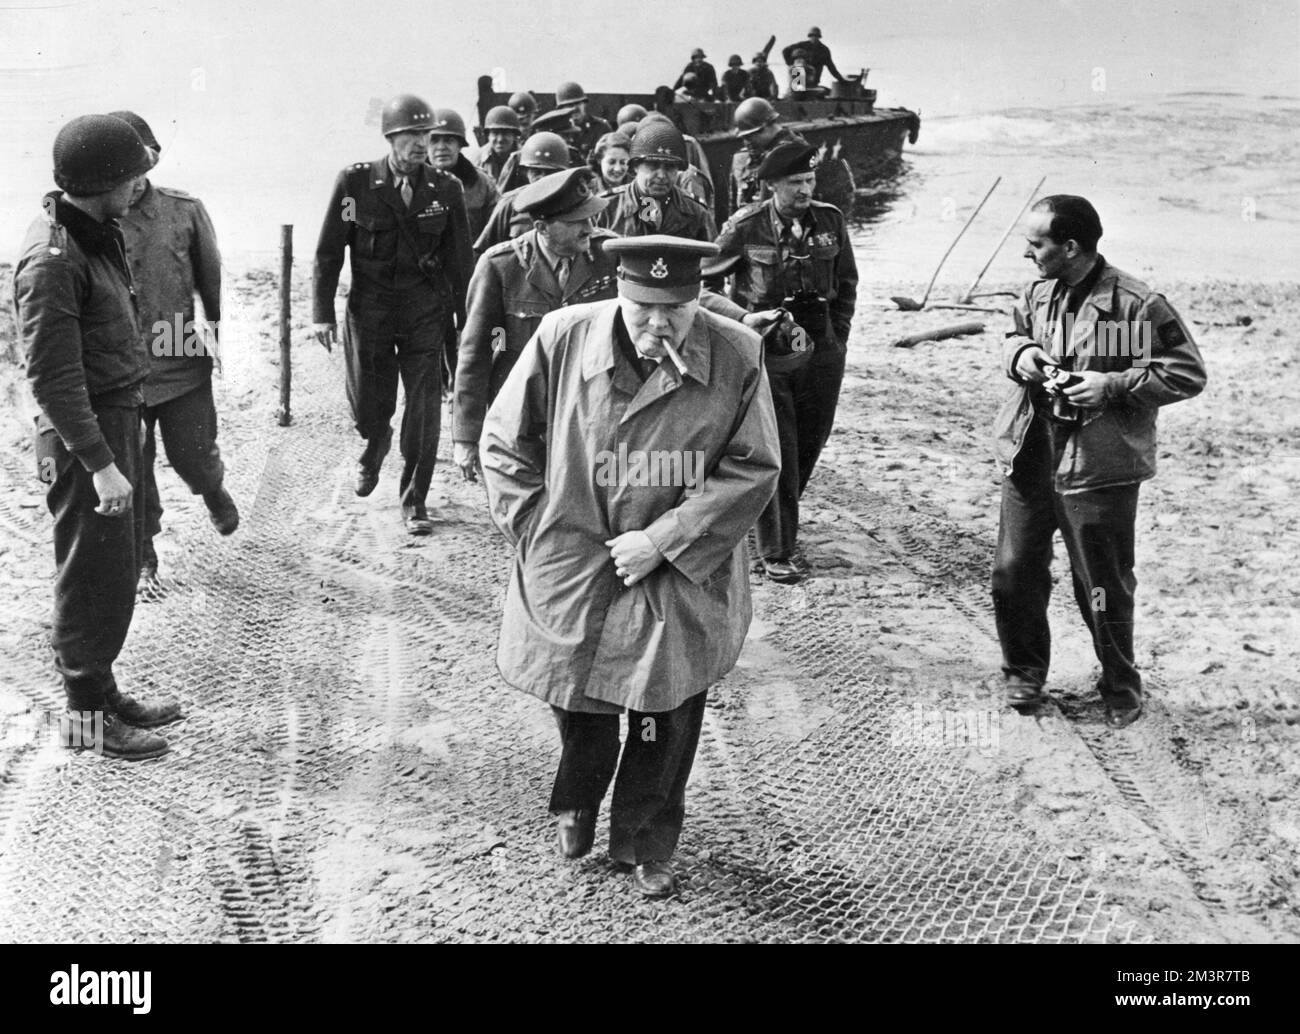 Der britische Premierminister Winston Churchill, am deutschen Ostufer des Rheins, mit Feldmarschall Montgomery (Beret) und Feldmarschall Brooke (unmittelbar hinter Churchill) im März 1945 als Teil der Operation Plunder im Zweiten Weltkrieg. Sie sind bei US-Kommandanten und Wachen. Datum: 25.. März 1945 Stockfoto